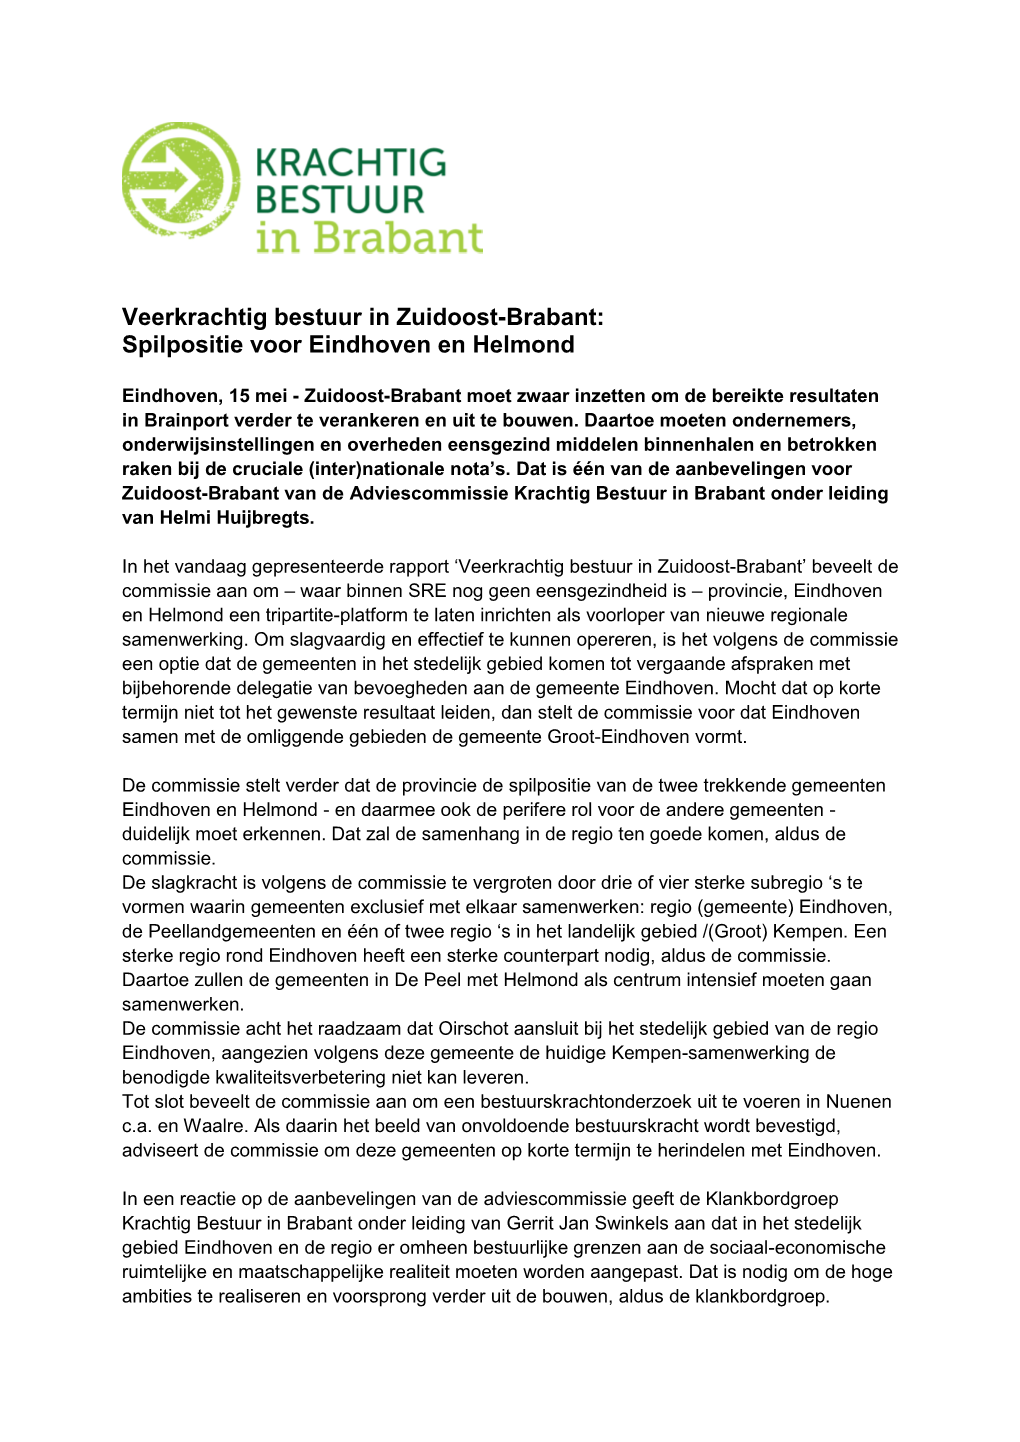 Veerkrachtig Bestuur in Zuidoost-Brabant: Spilpositie Voor Eindhoven En Helmond